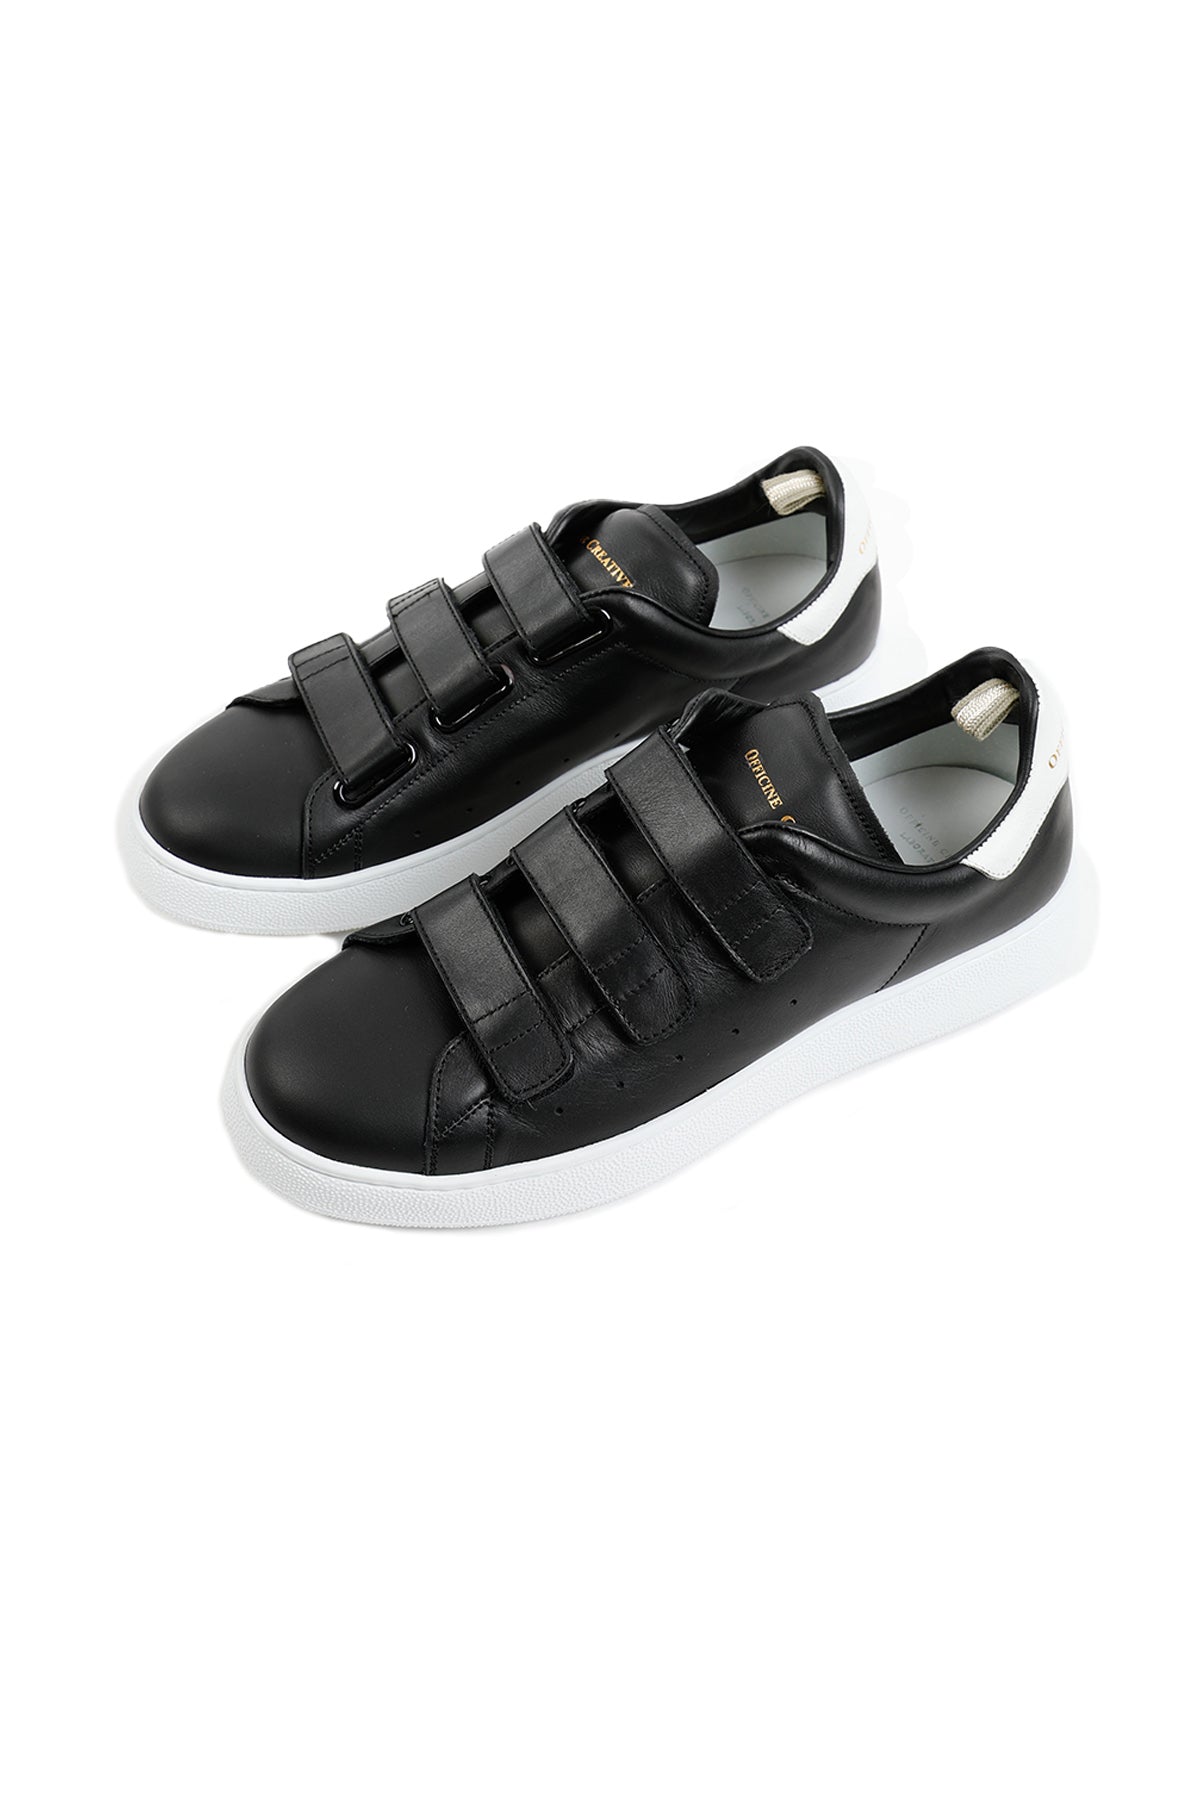 Officine Creative Cırtcırt Bantlı Deri Sneaker Ayakkabı-Libas Trendy Fashion Store